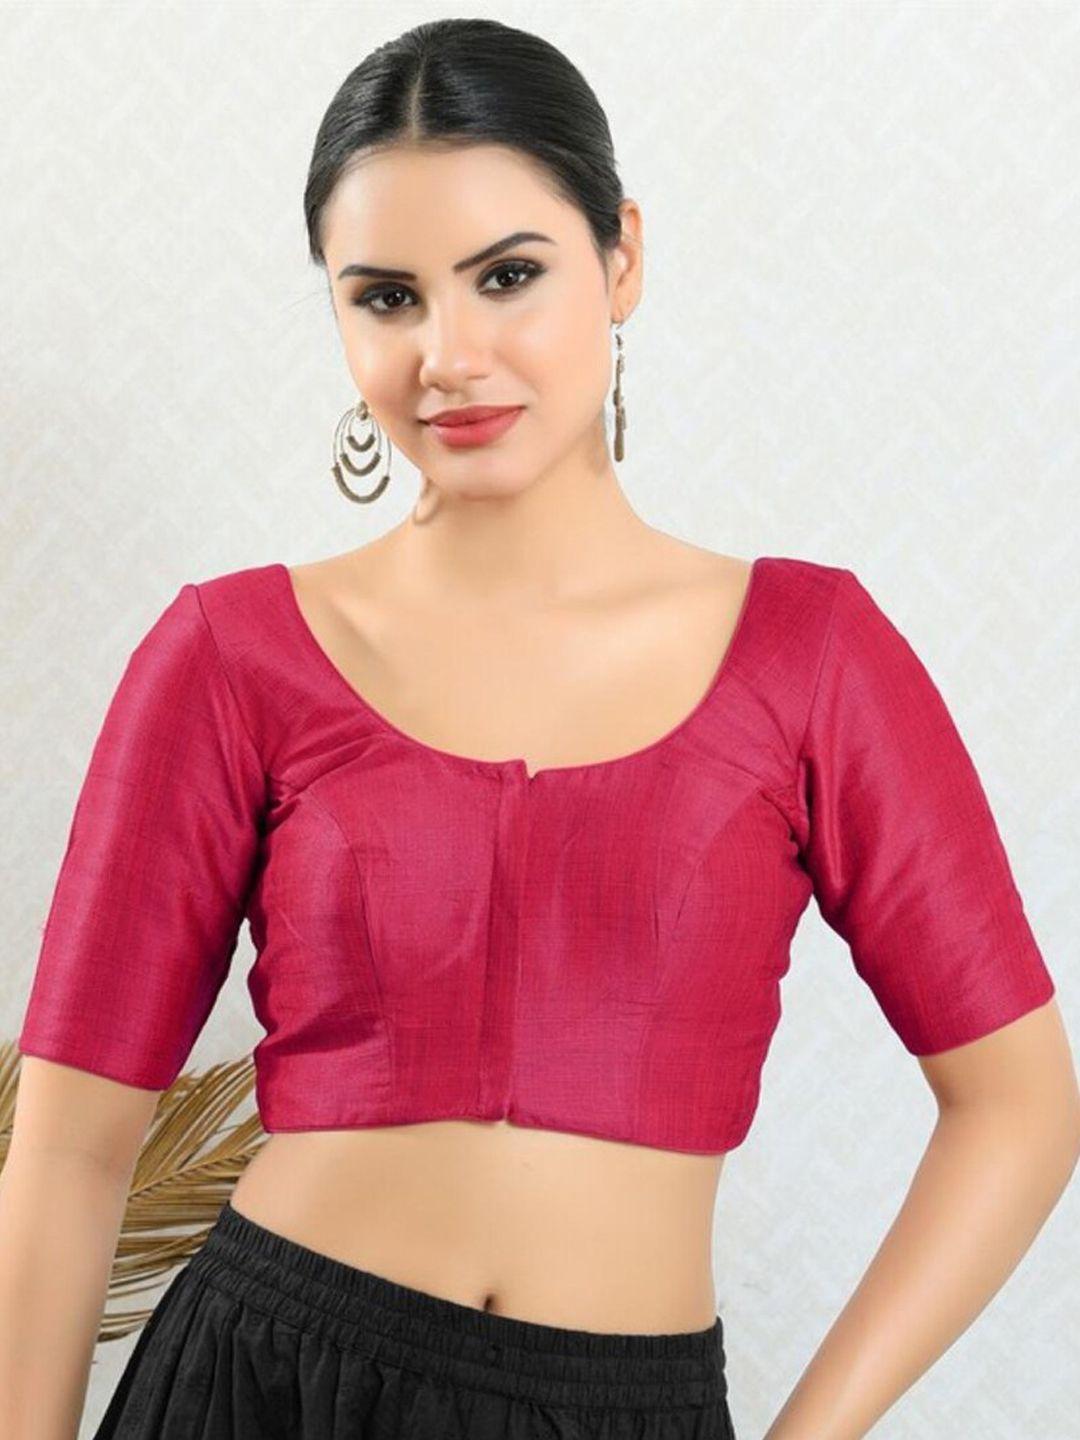 salwar studio readymade saree blouse